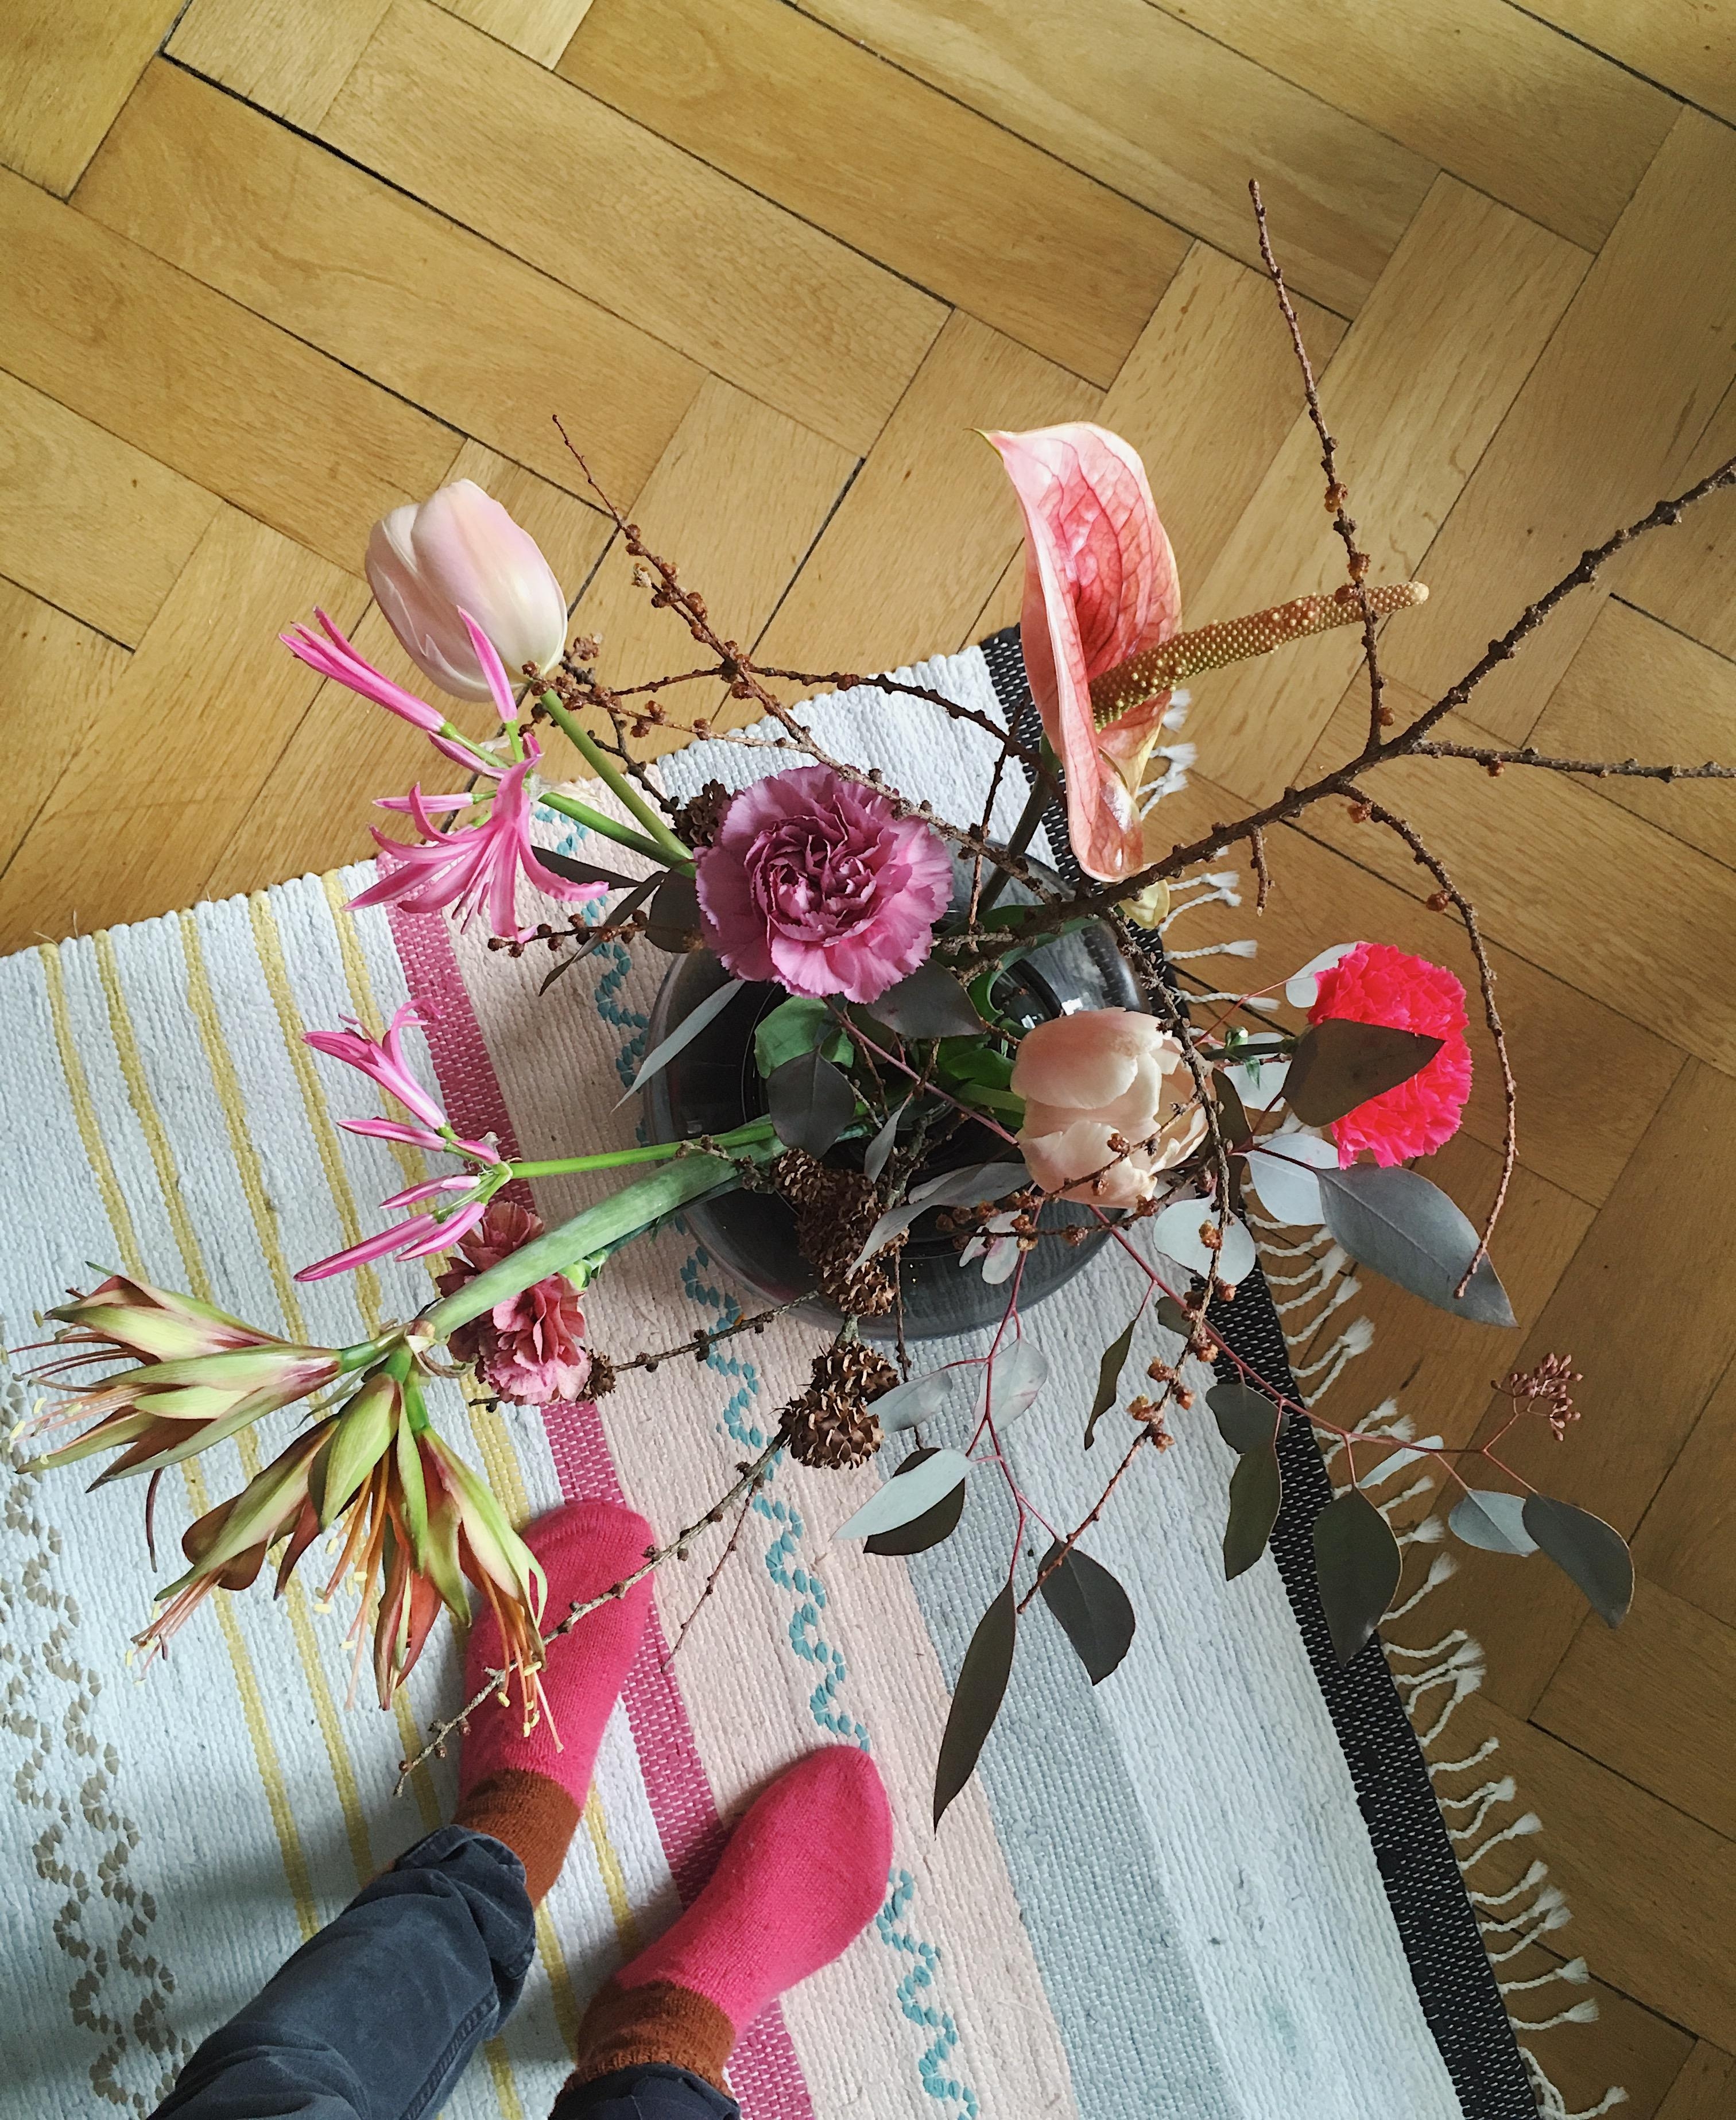 Fresh flowers
Wohnzimmer
#flowers #freshdecoration #nordicstyle #scandiliving #home #interior #interiordesign #rug 